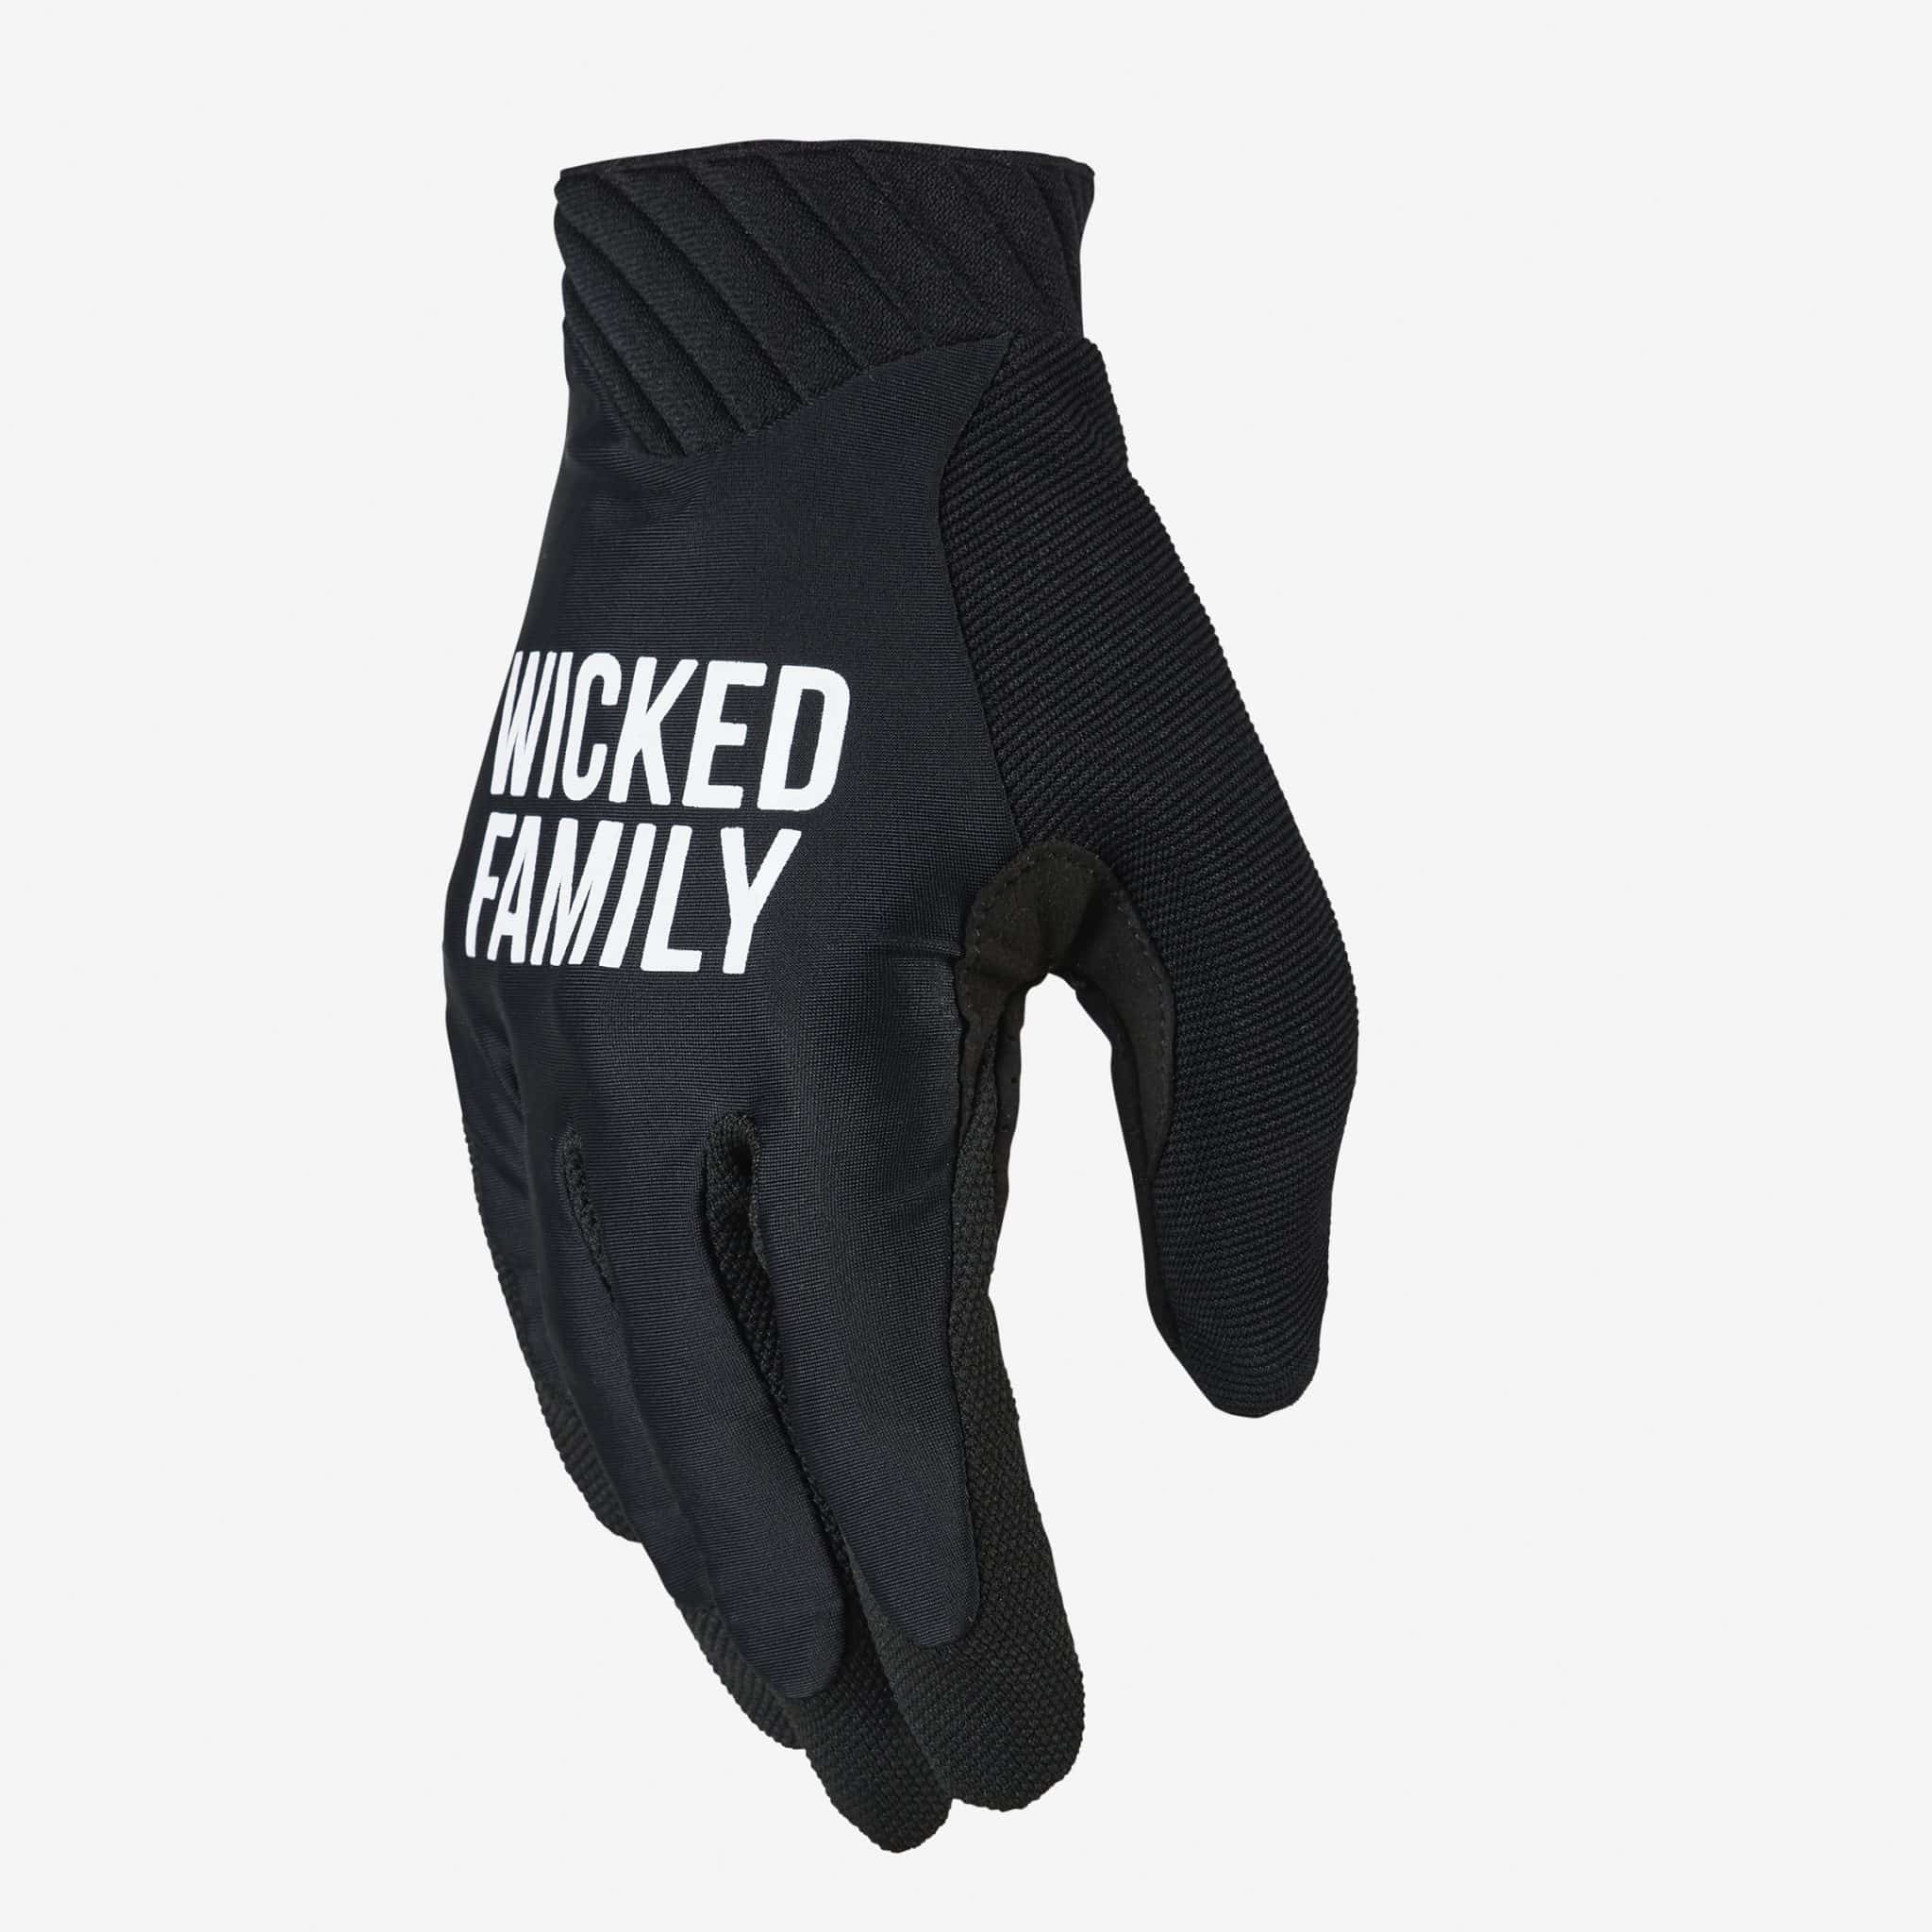 gloves Family & gloves - Wicked gear Motocross Dirt - bike MX